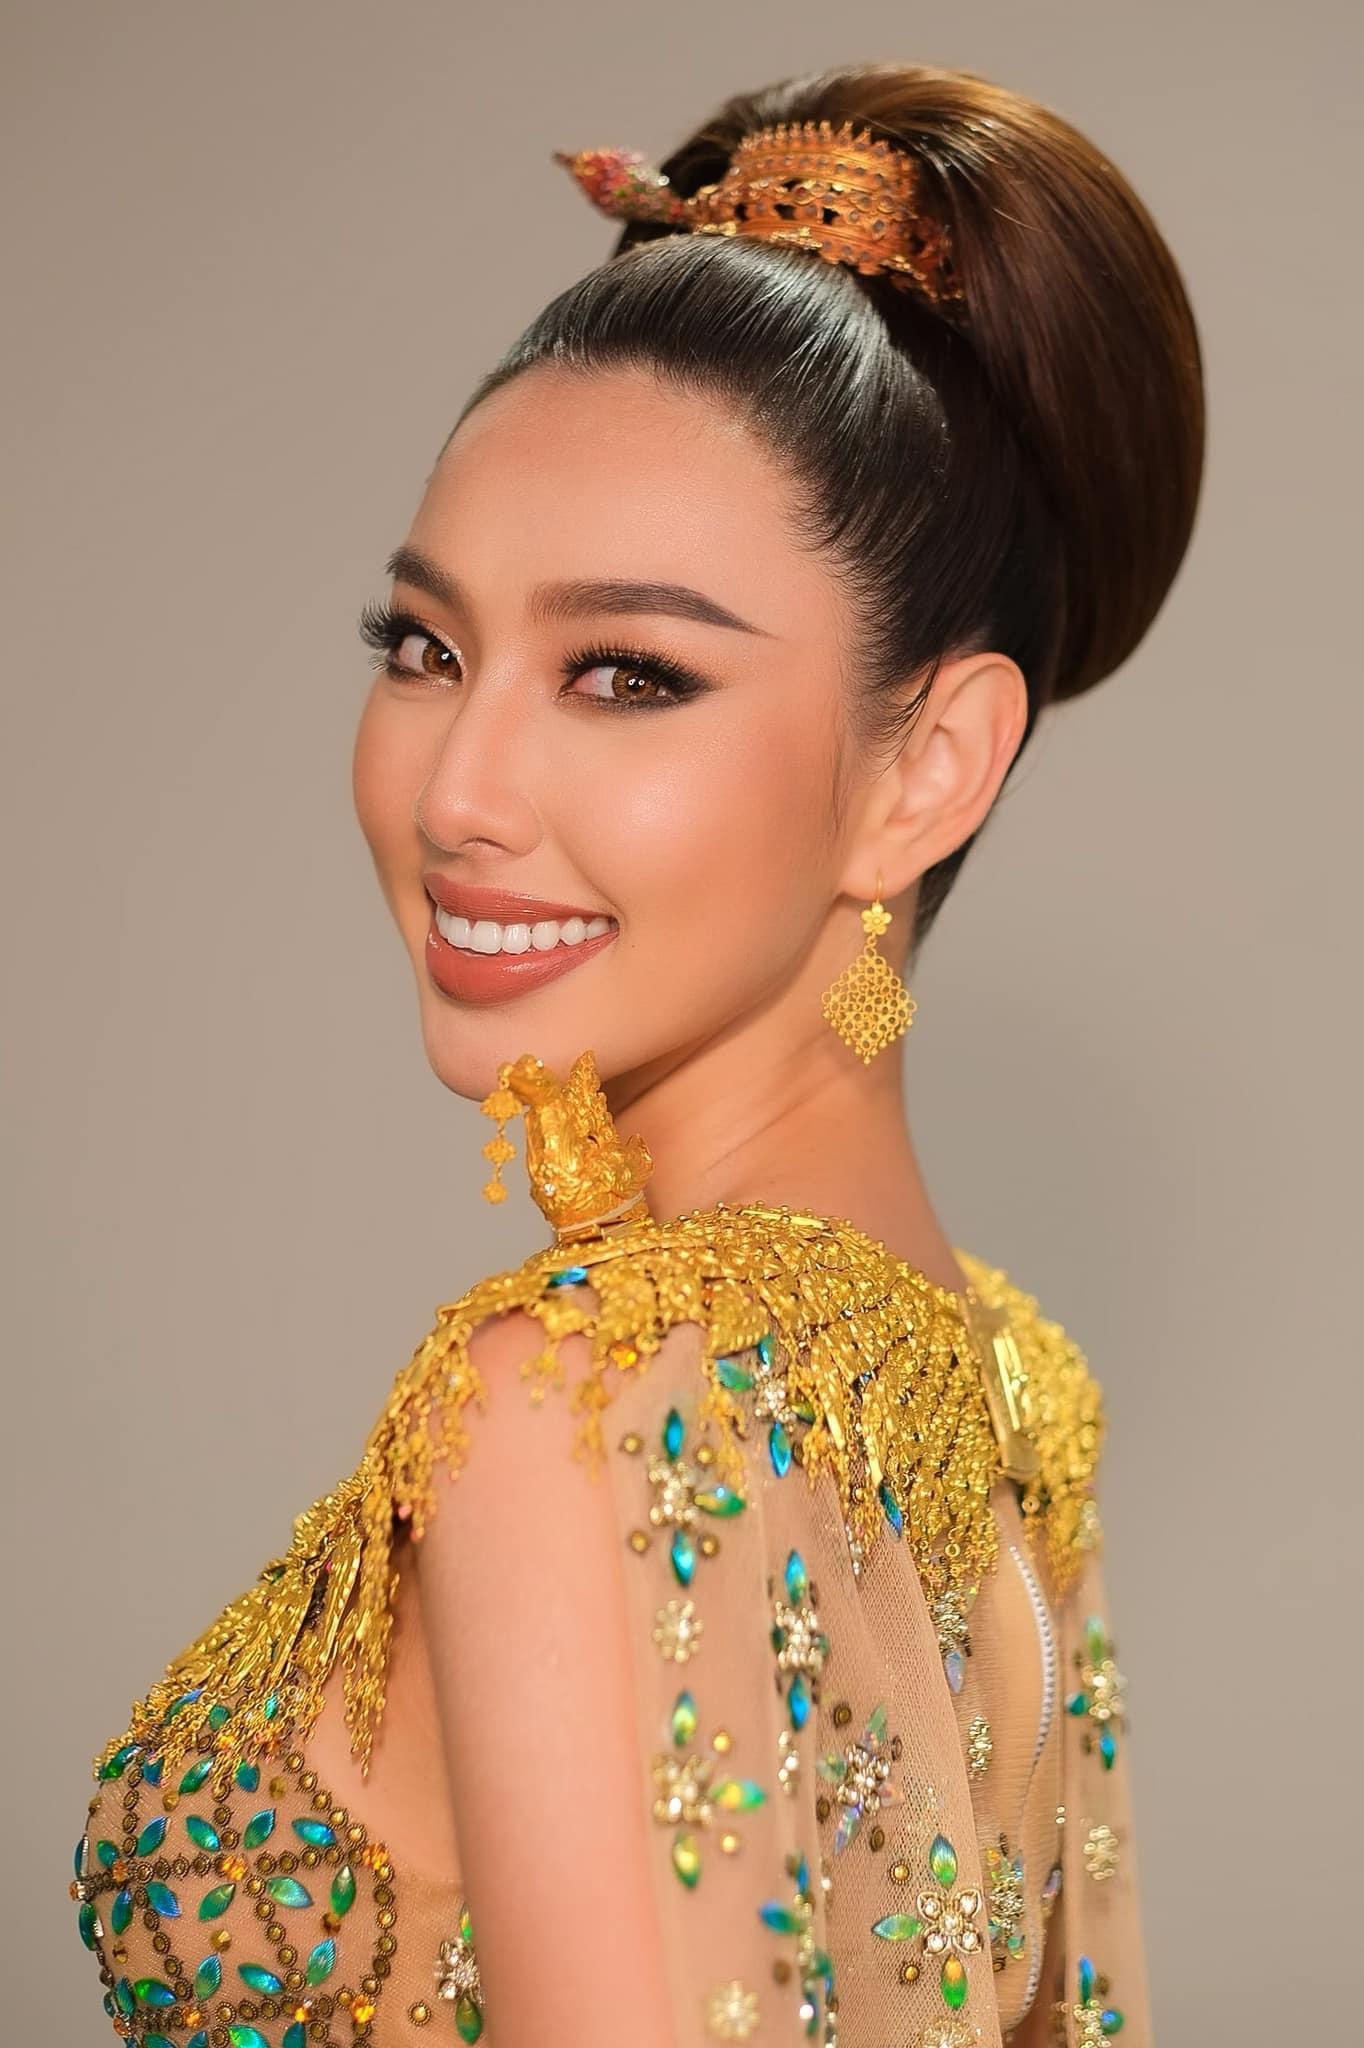 Được biết bộ trang sức mà cô mang trên người có trị giá hơn 35 triệu baht (gần 24 tỷ đồng)